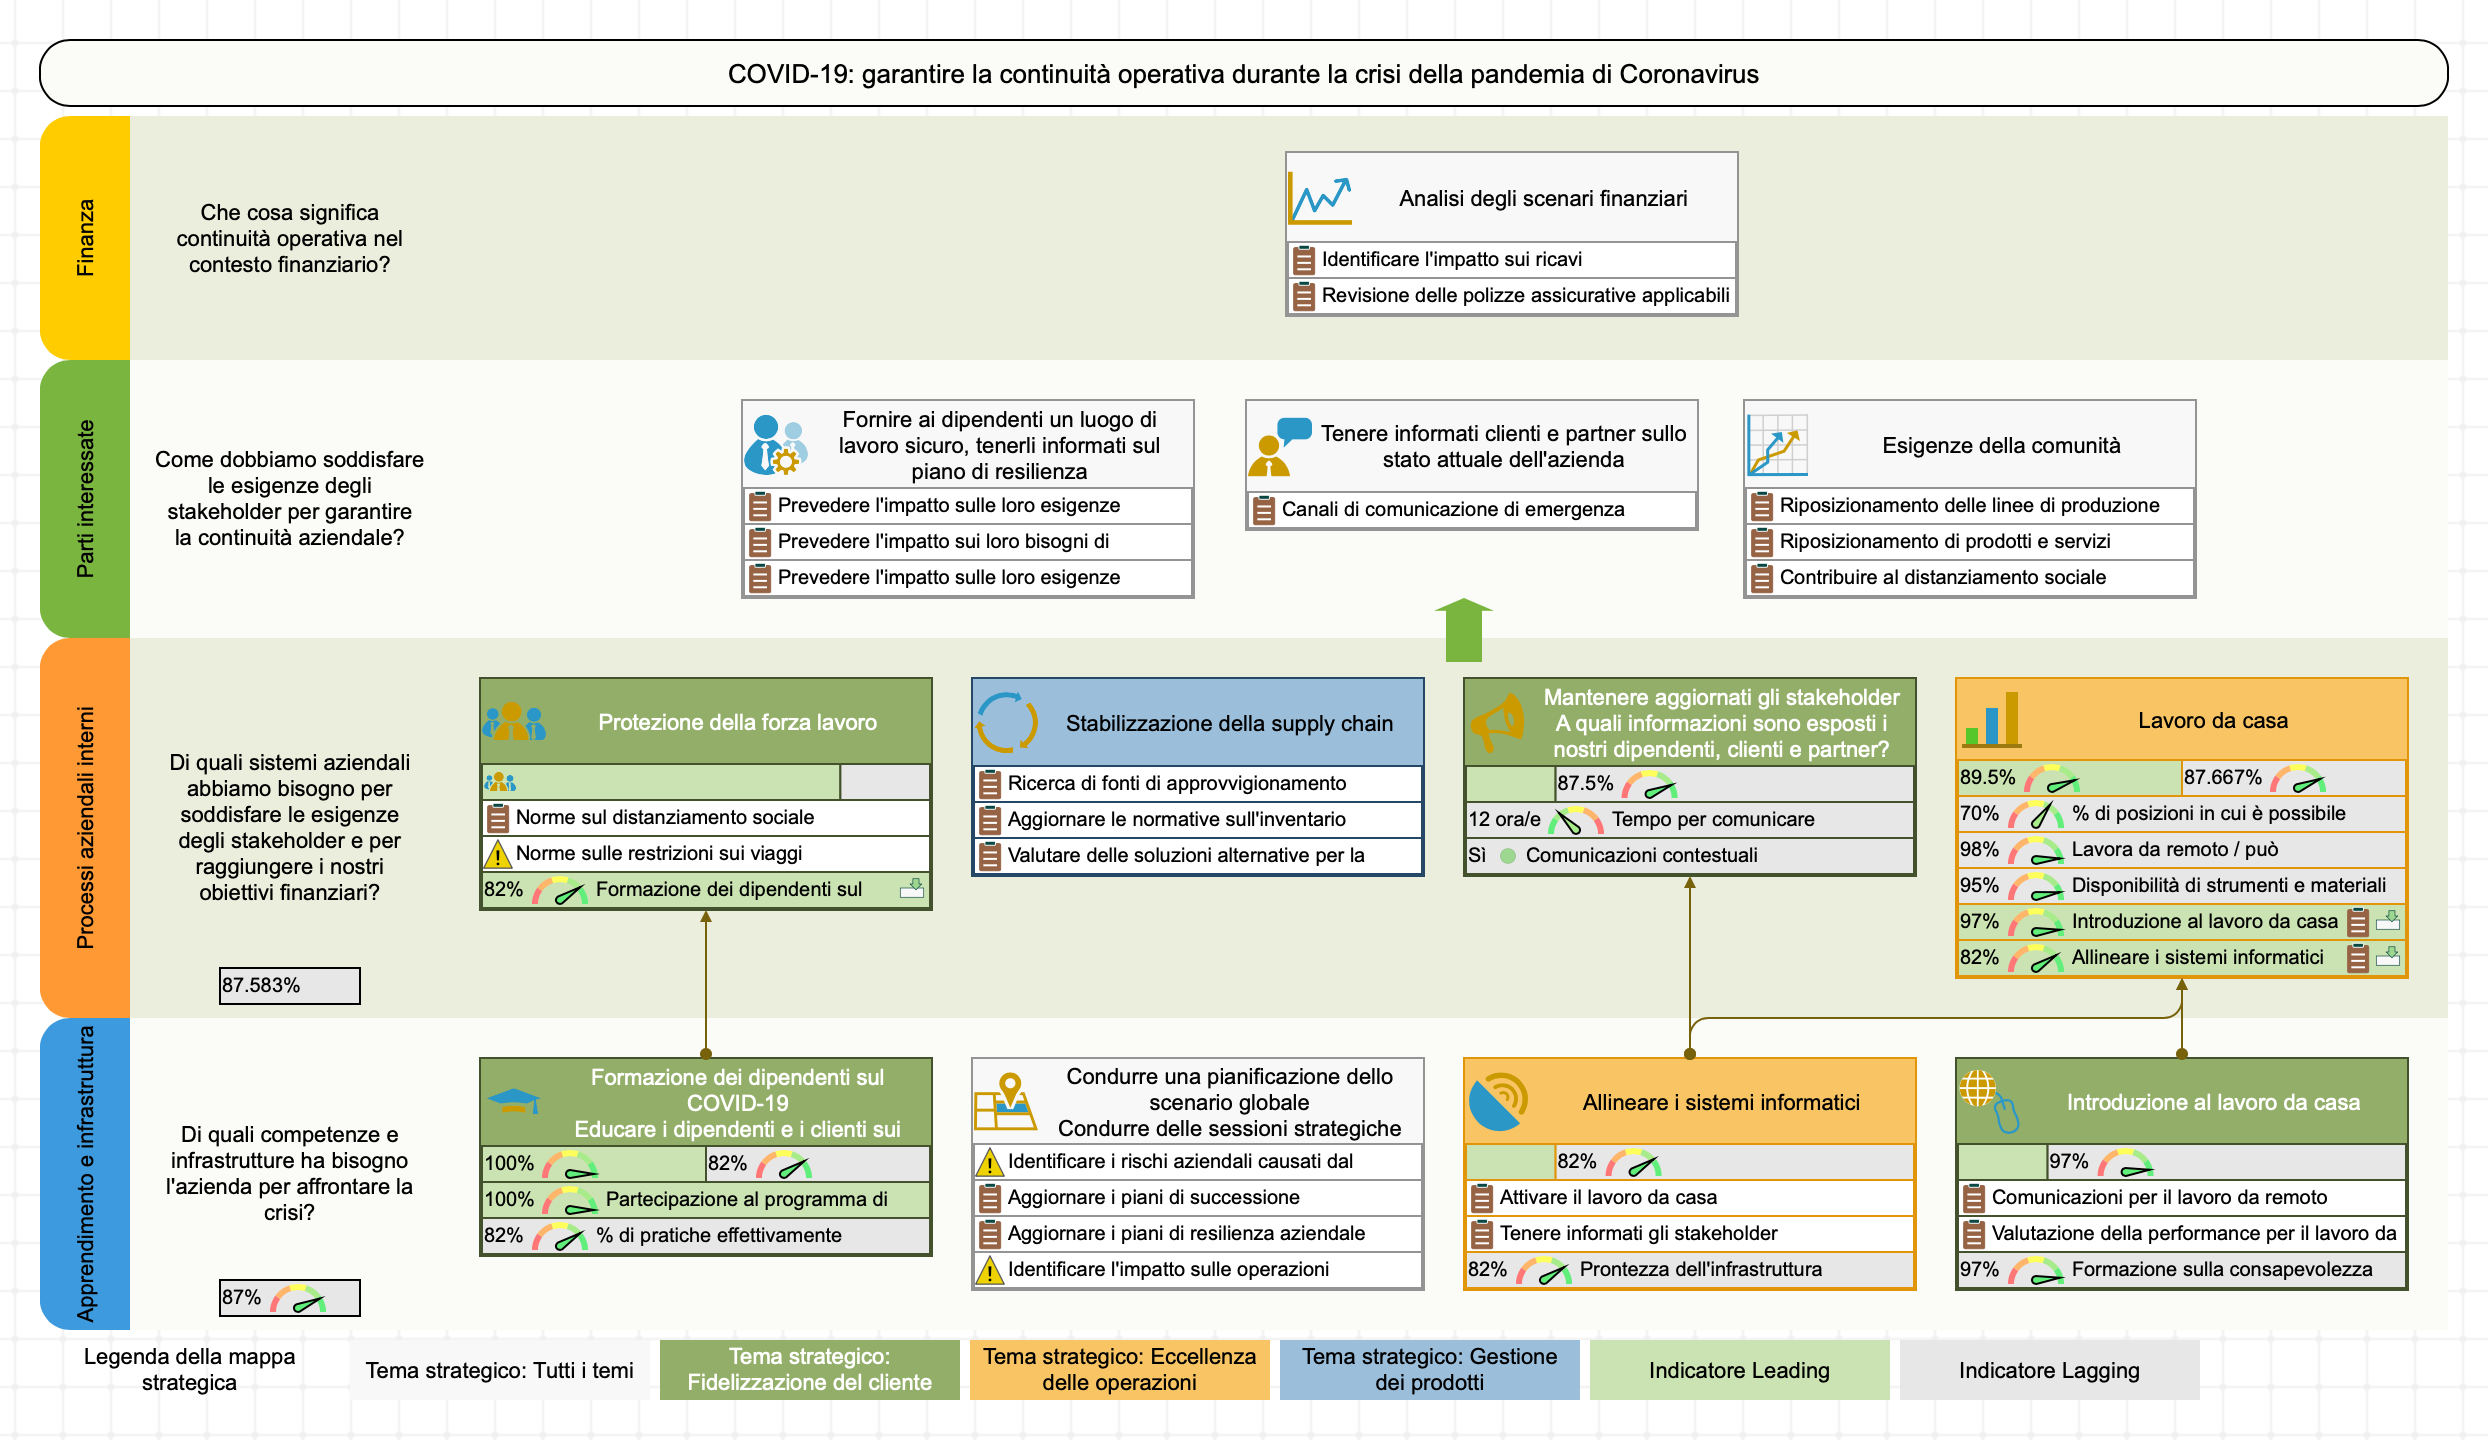 COVID 19 - modello di mappa strategica per la strategia di reazione al Coronavirus